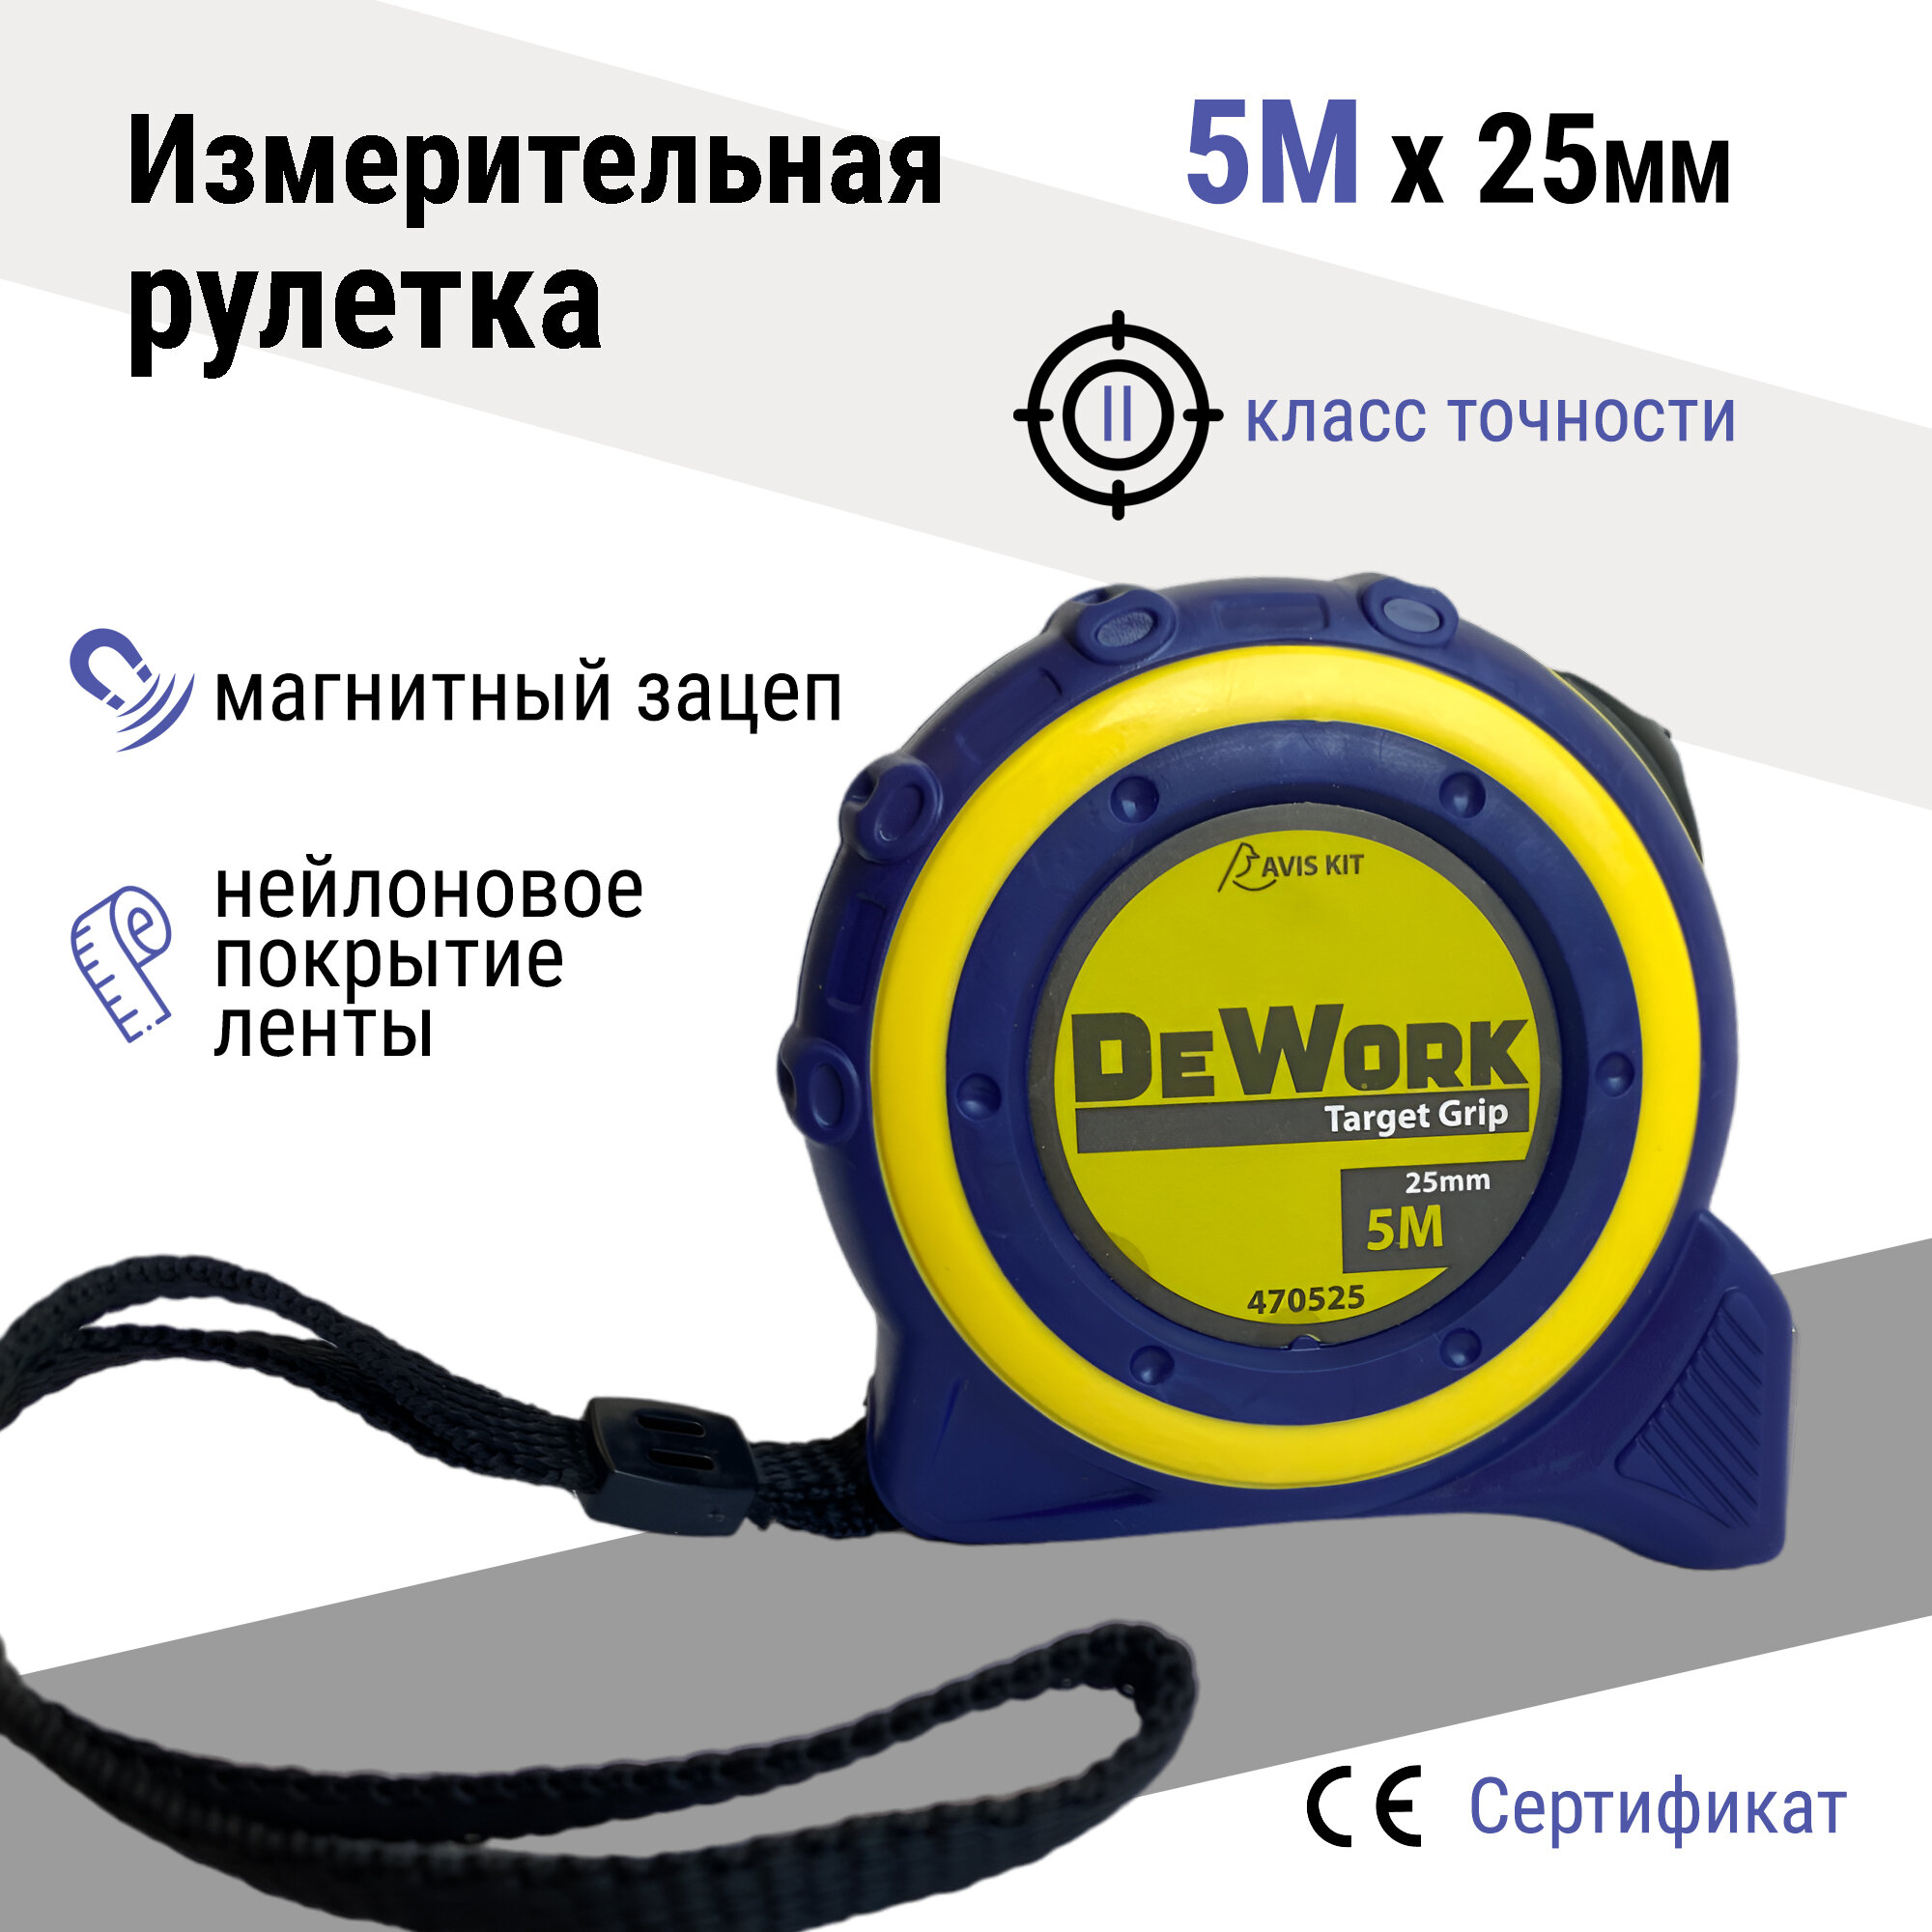 Измерительная рулетка DeWork Target Grip 5м x 25мм магнитный зацеп двухкомпонентная